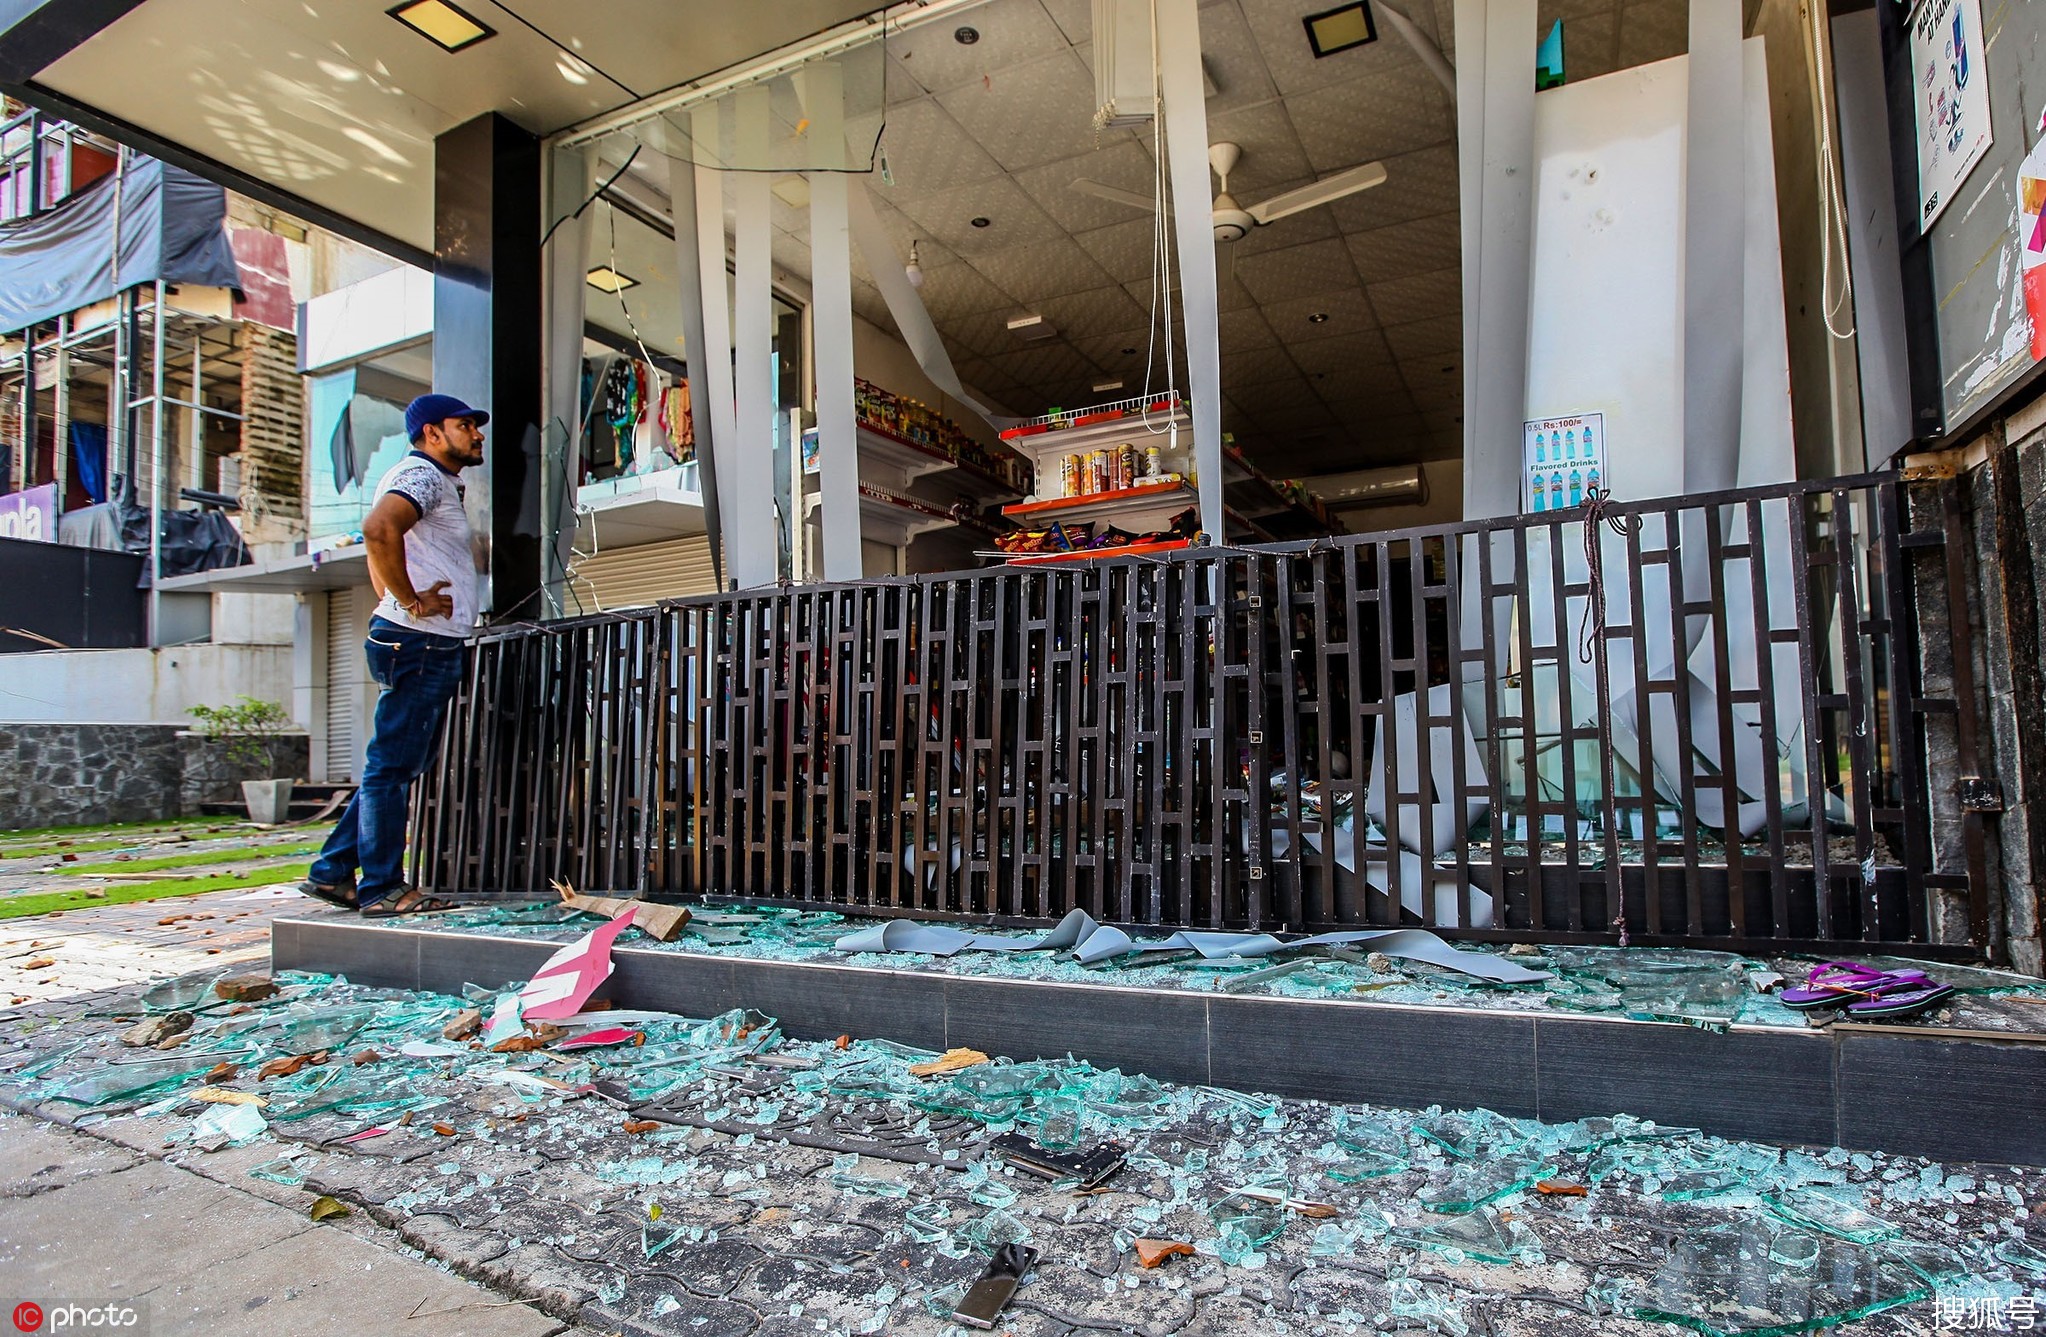 爆炸之殇未息 斯里兰卡多家穆斯林商店又遭打砸